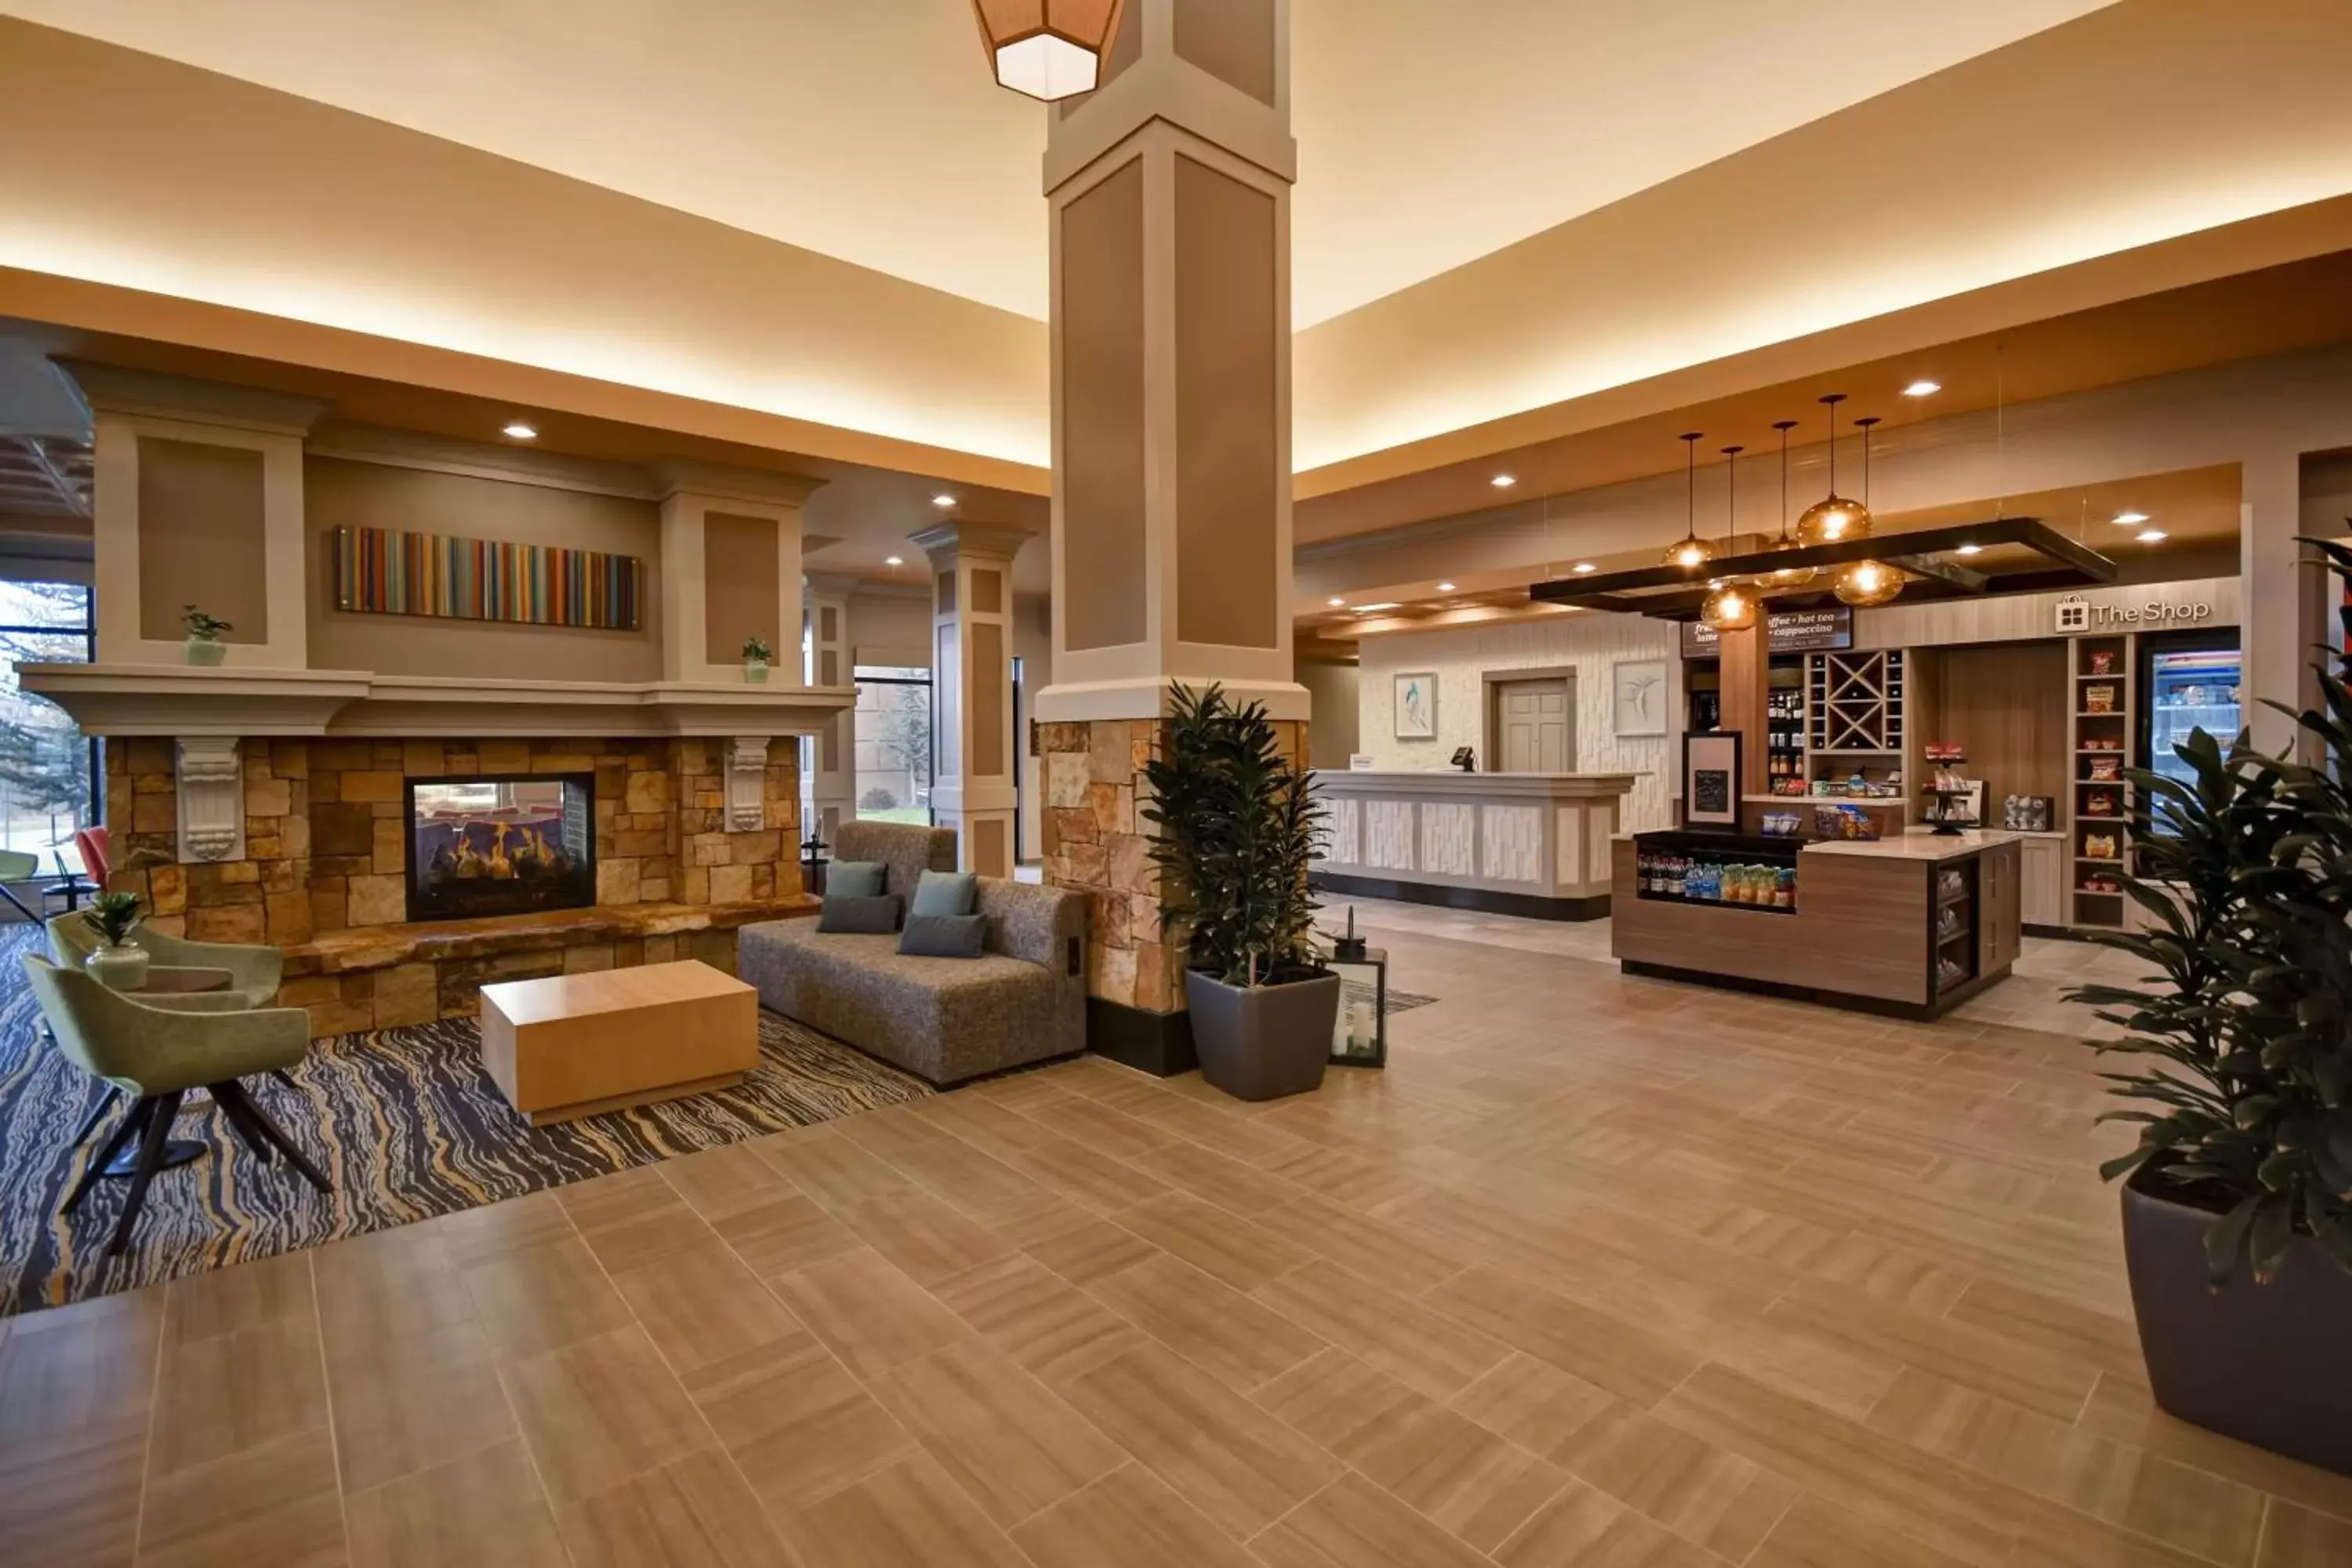 Lobby or reception, Lobby/Reception in Hilton Garden Inn Twin Falls